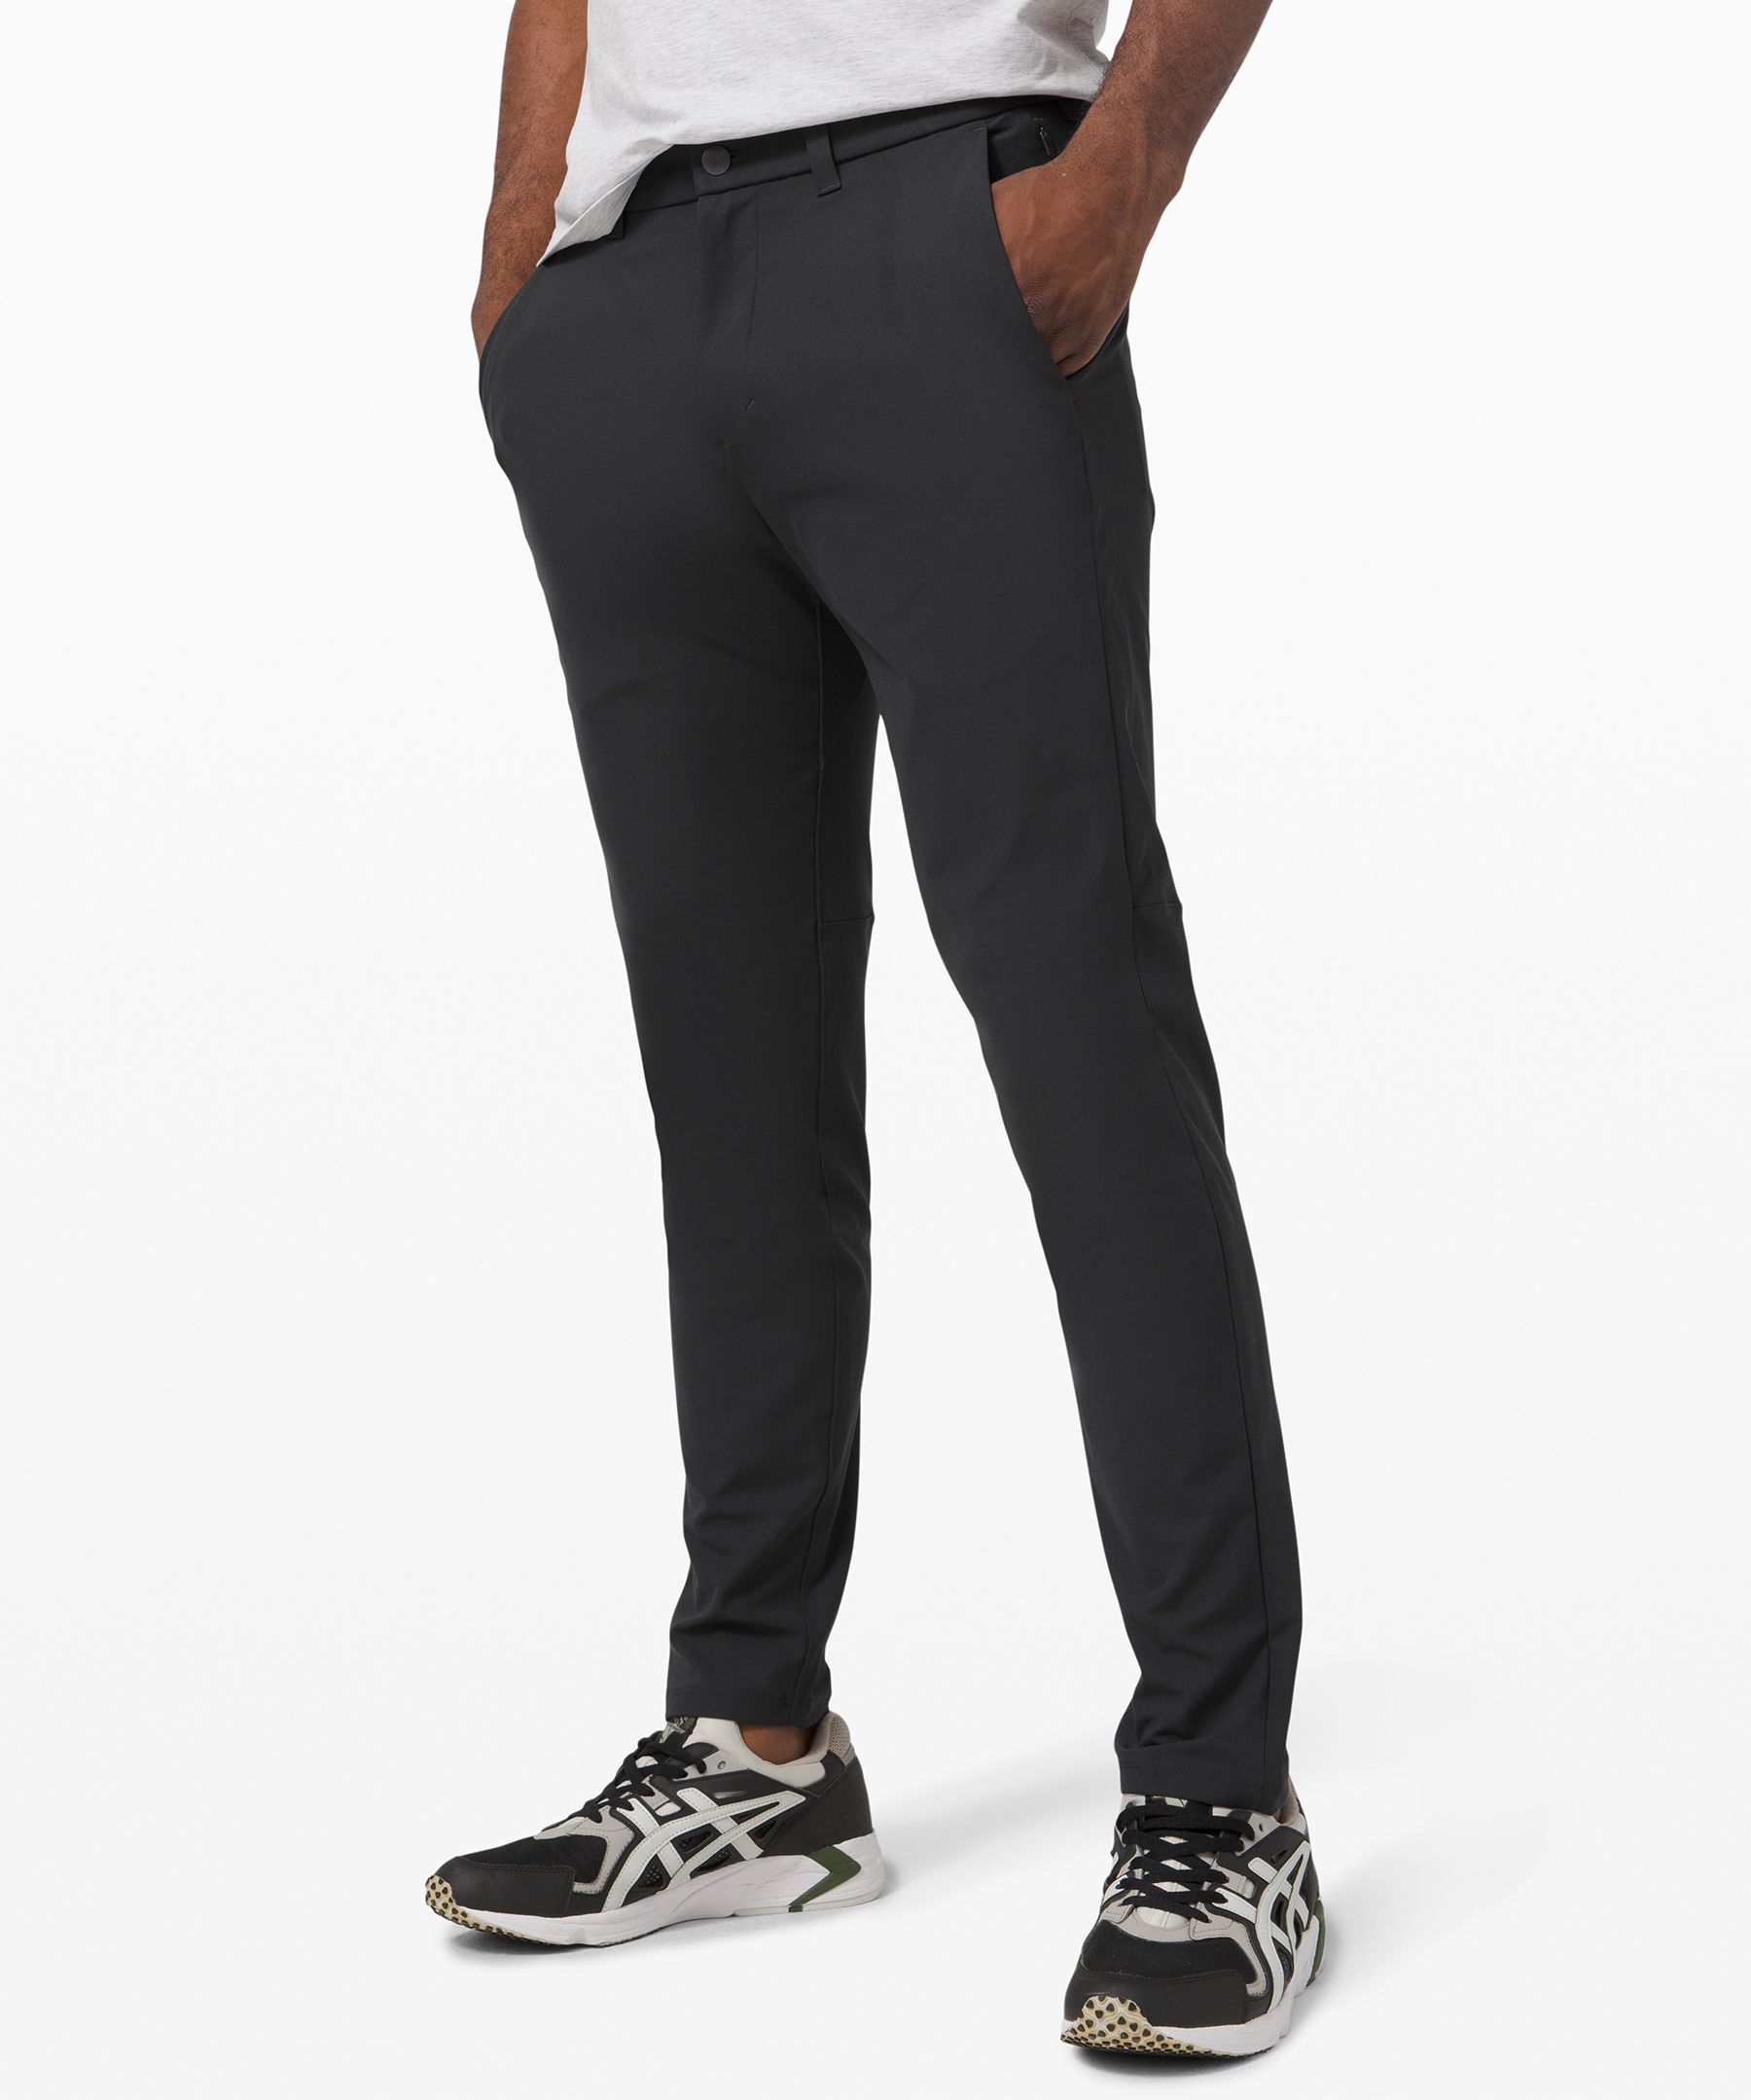 Commission Slim-Fit Pant 37 *Warpstreme, Men's Trousers